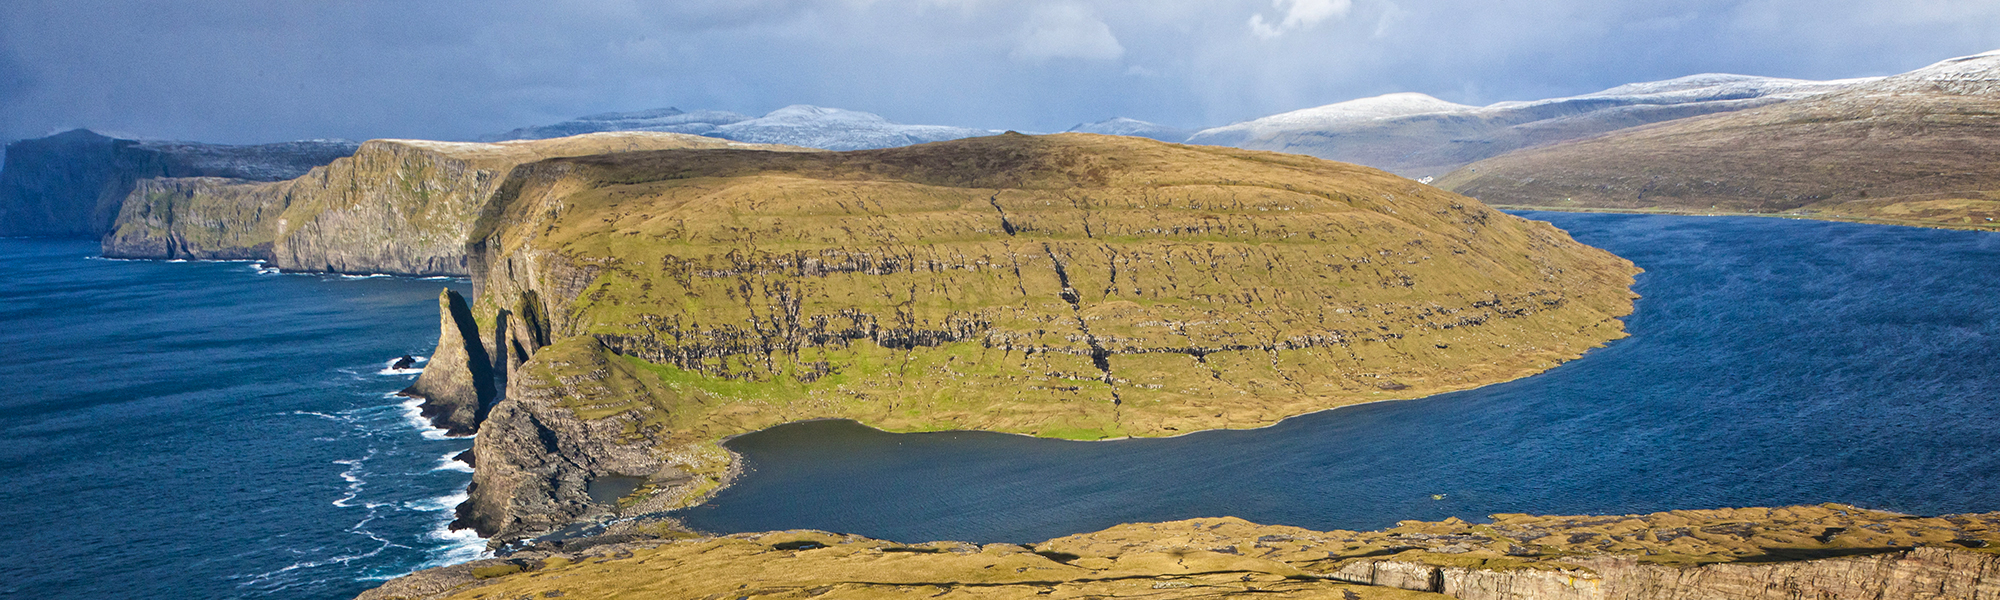 Voyage sur mesure Iles Féroé © Morten Abrahamsen / Visit Faroe Islands